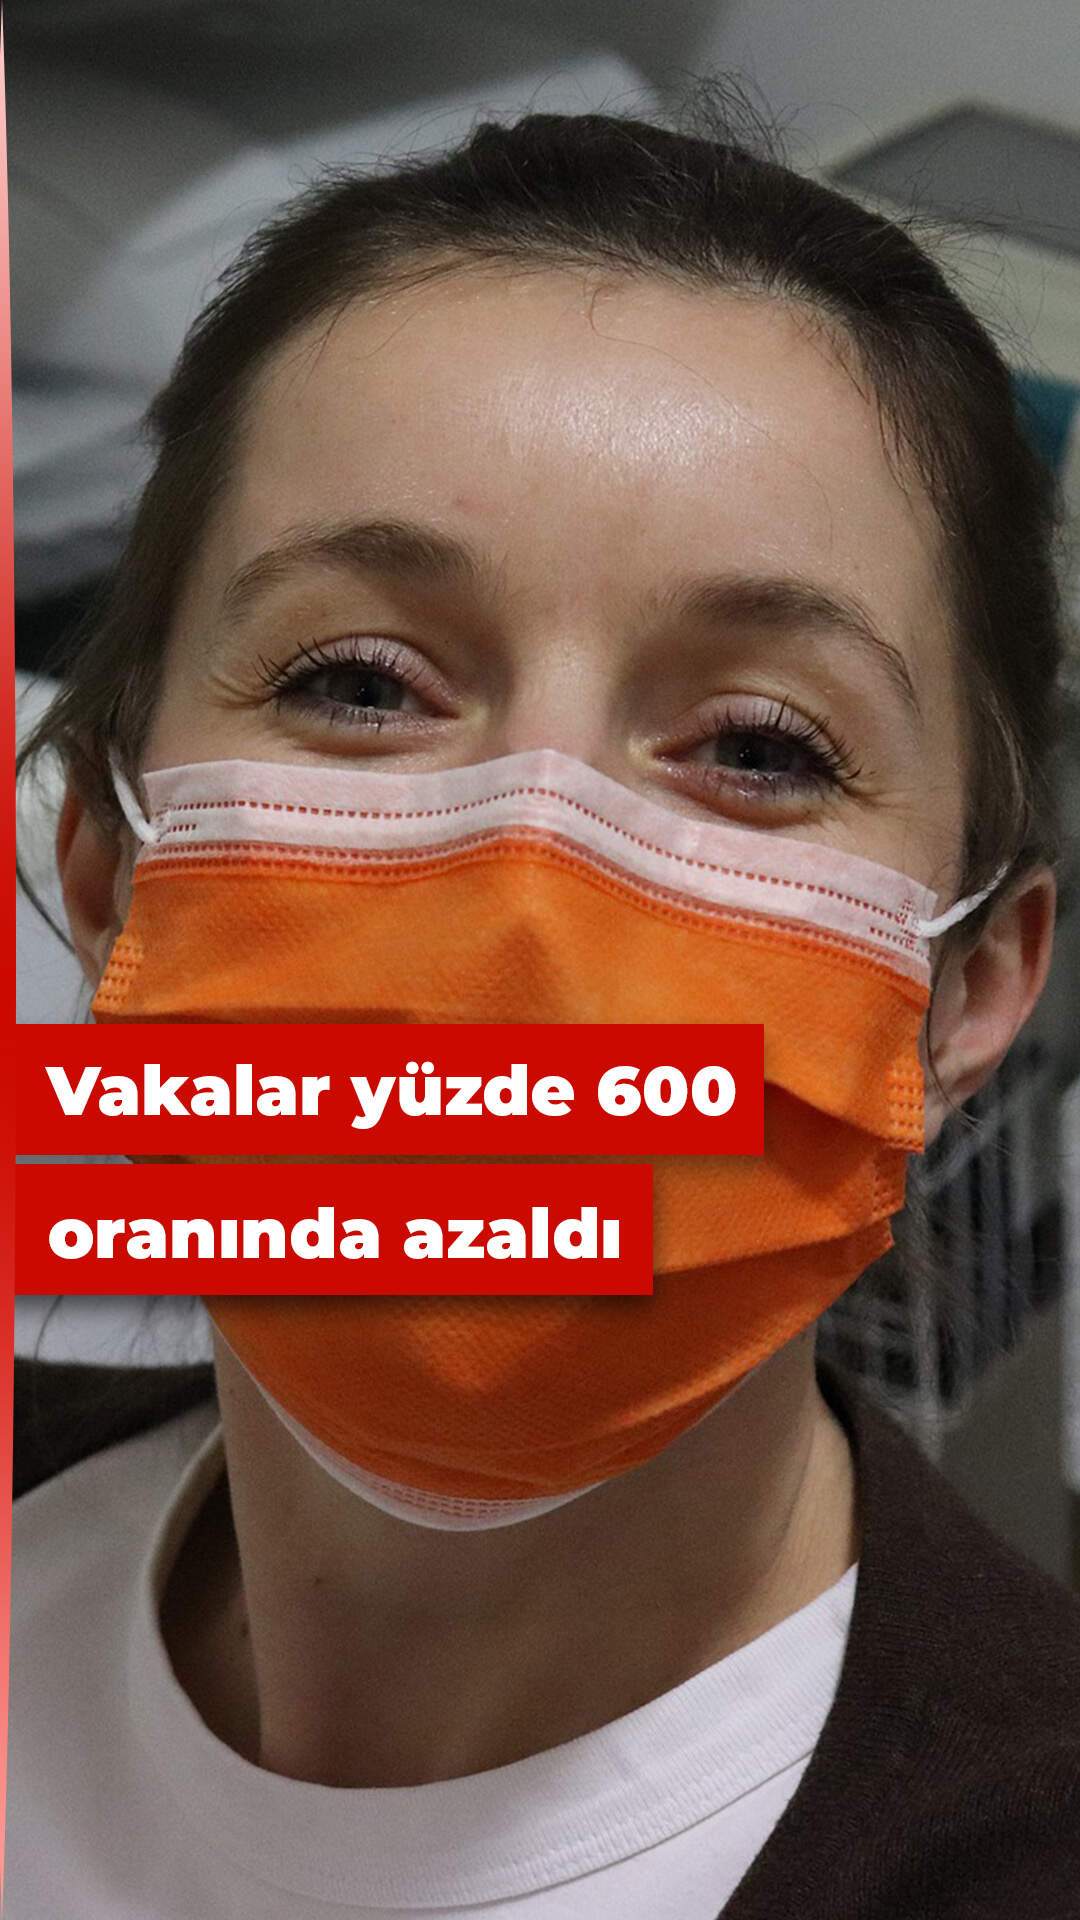 İstanbul'da vaka sayısı yüzde 600 azaldı!